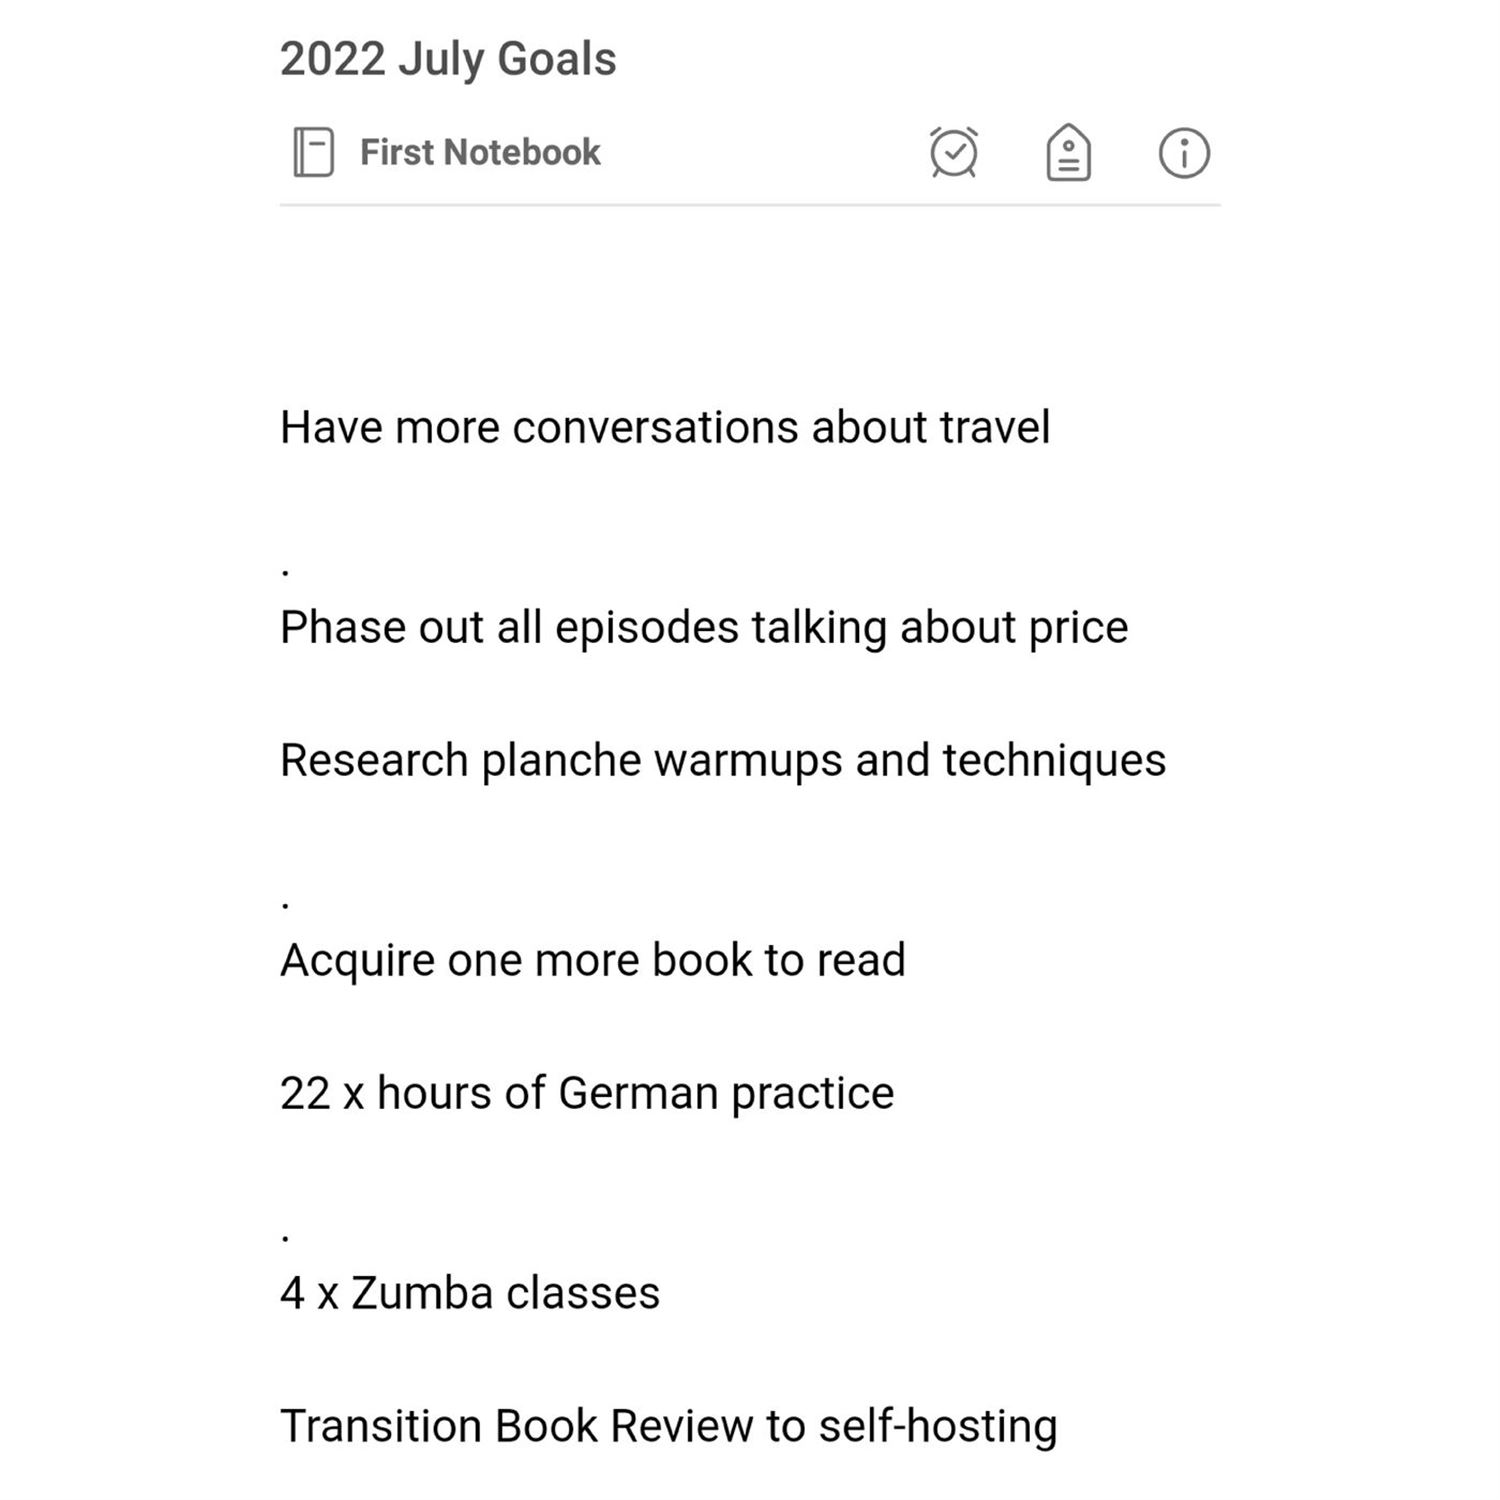 Kyrin's July Goals